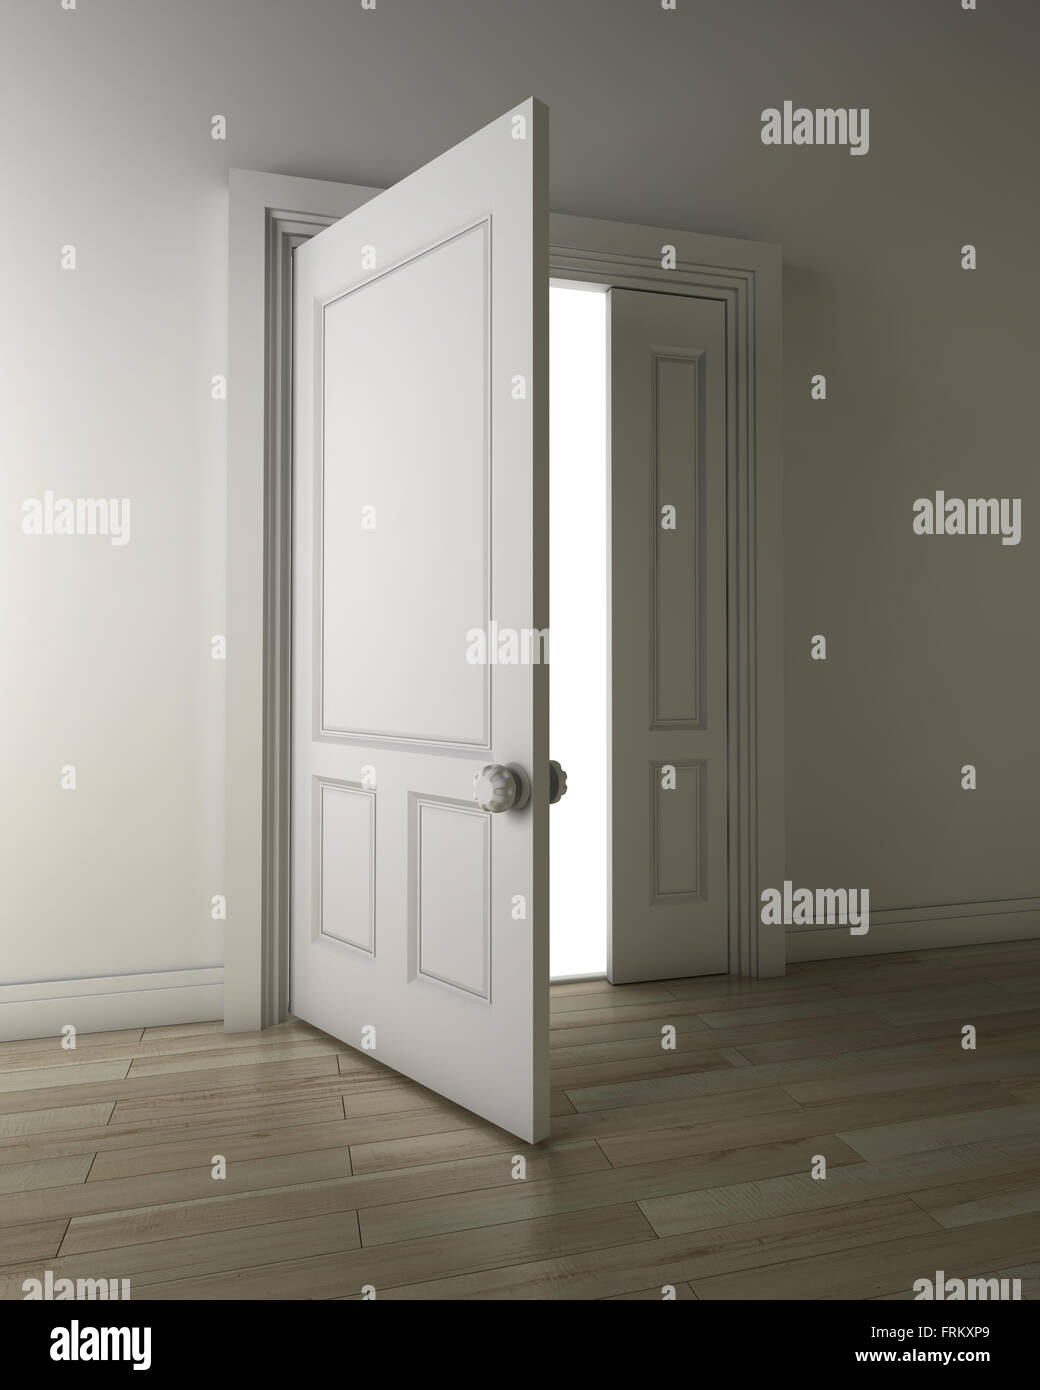 Öffnen Sie die Tür, computergenerierte Bild. Stockfoto